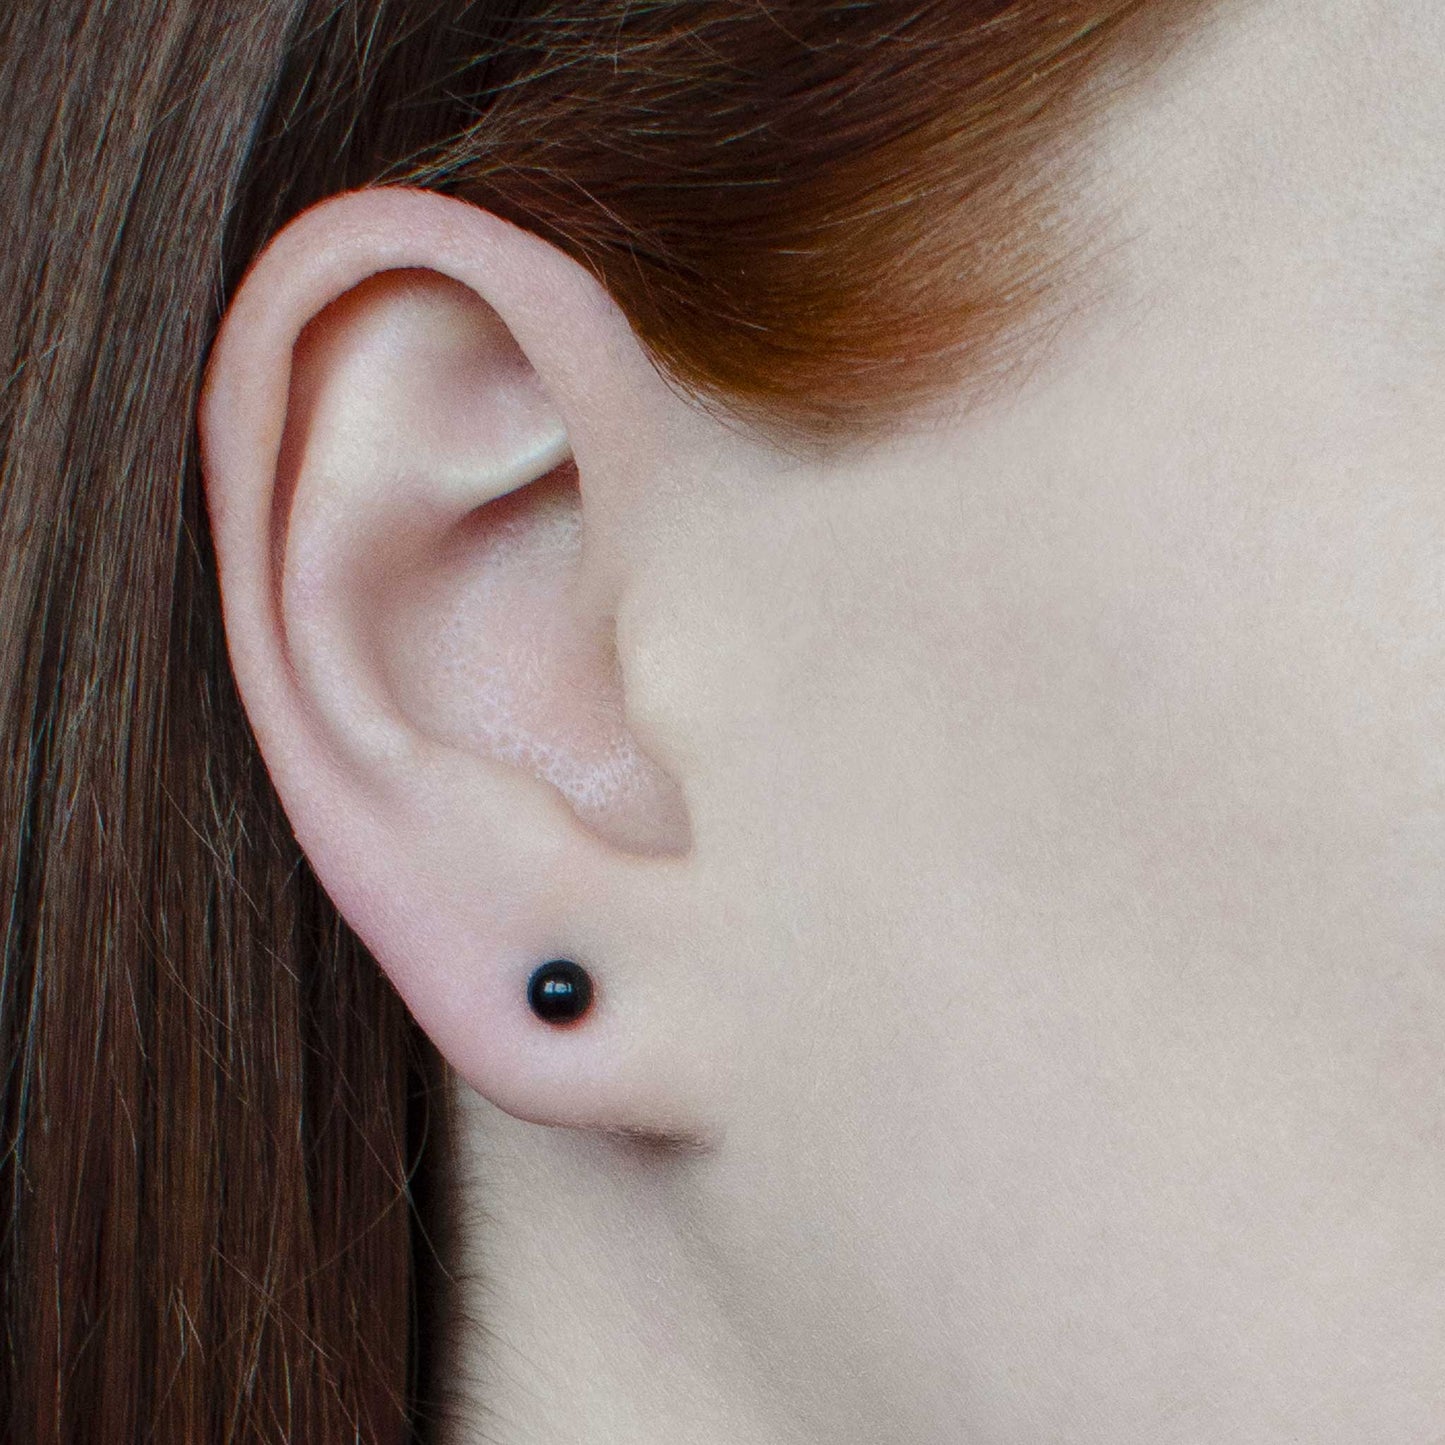 Woman wearing small black Onyx stud earring in earlobe